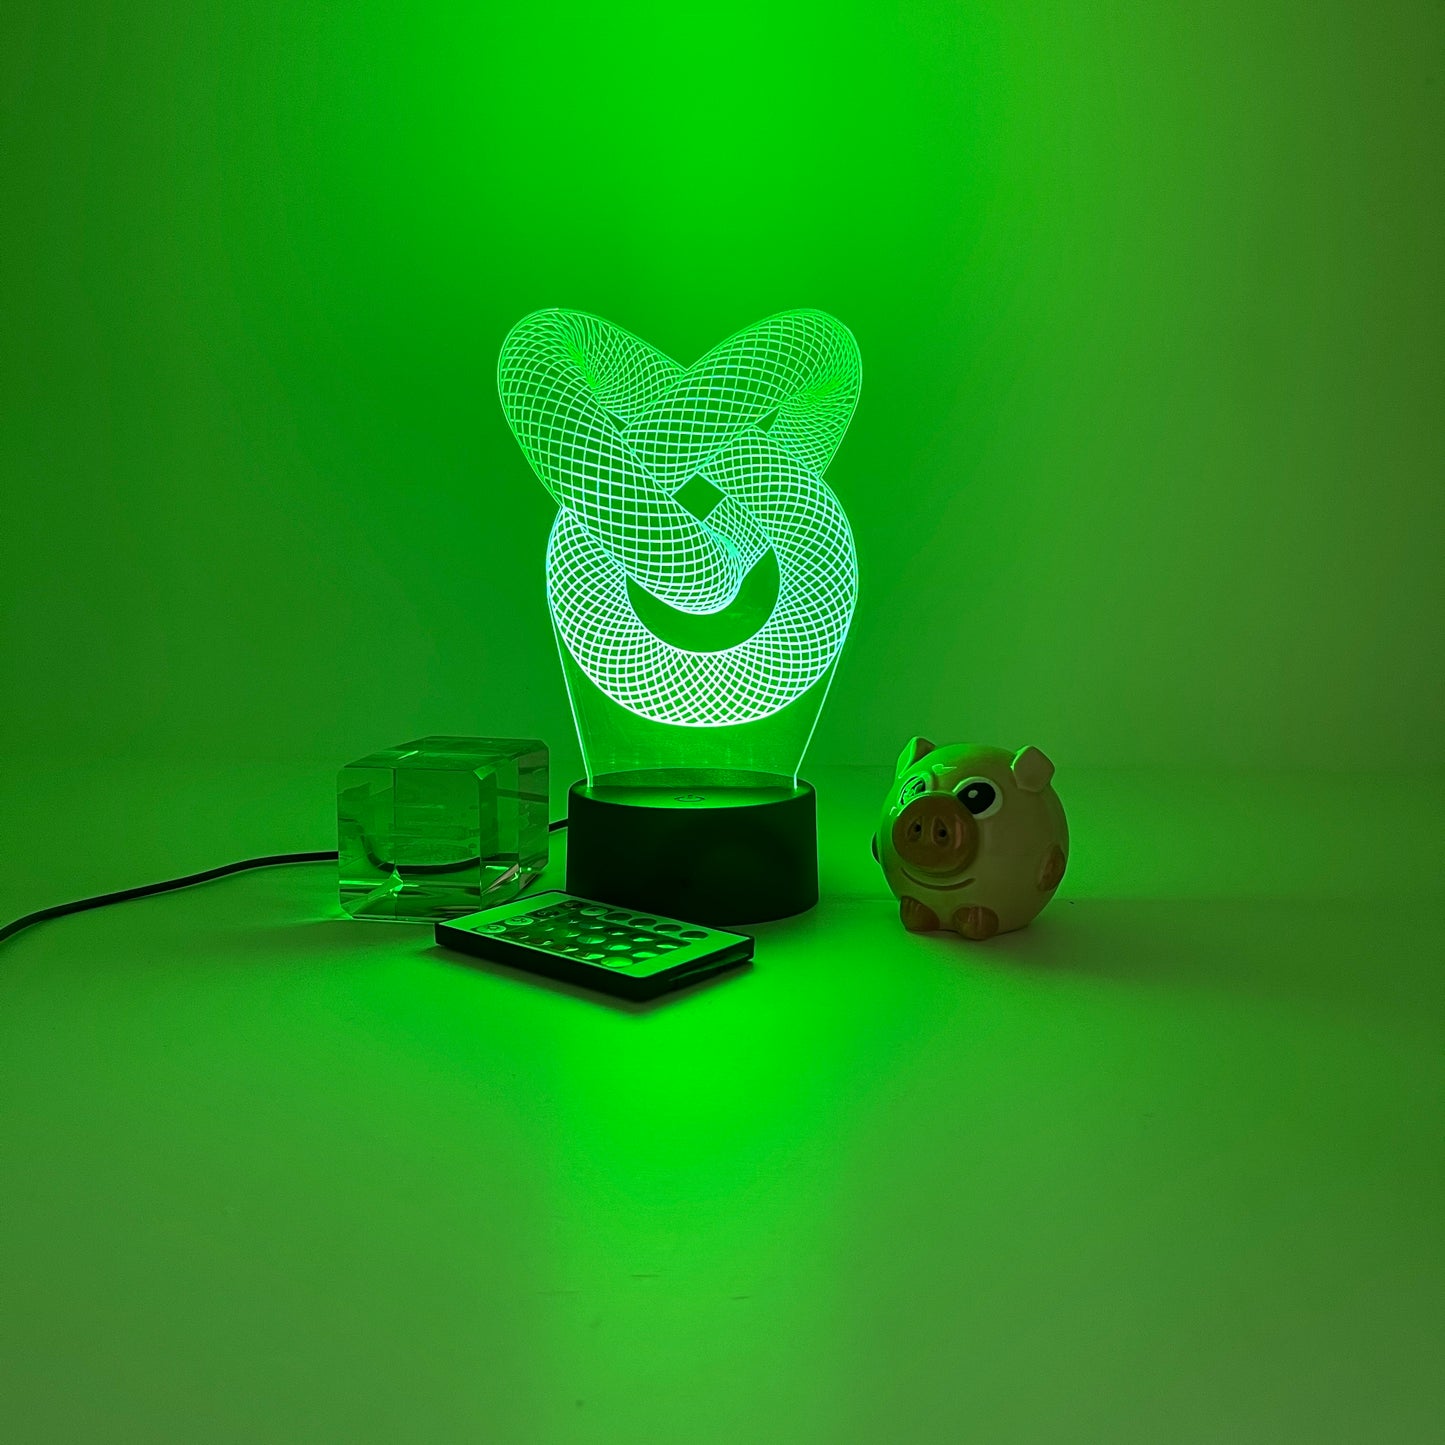 Personalized Torus Knot 3D LED Light Hologram Illusions